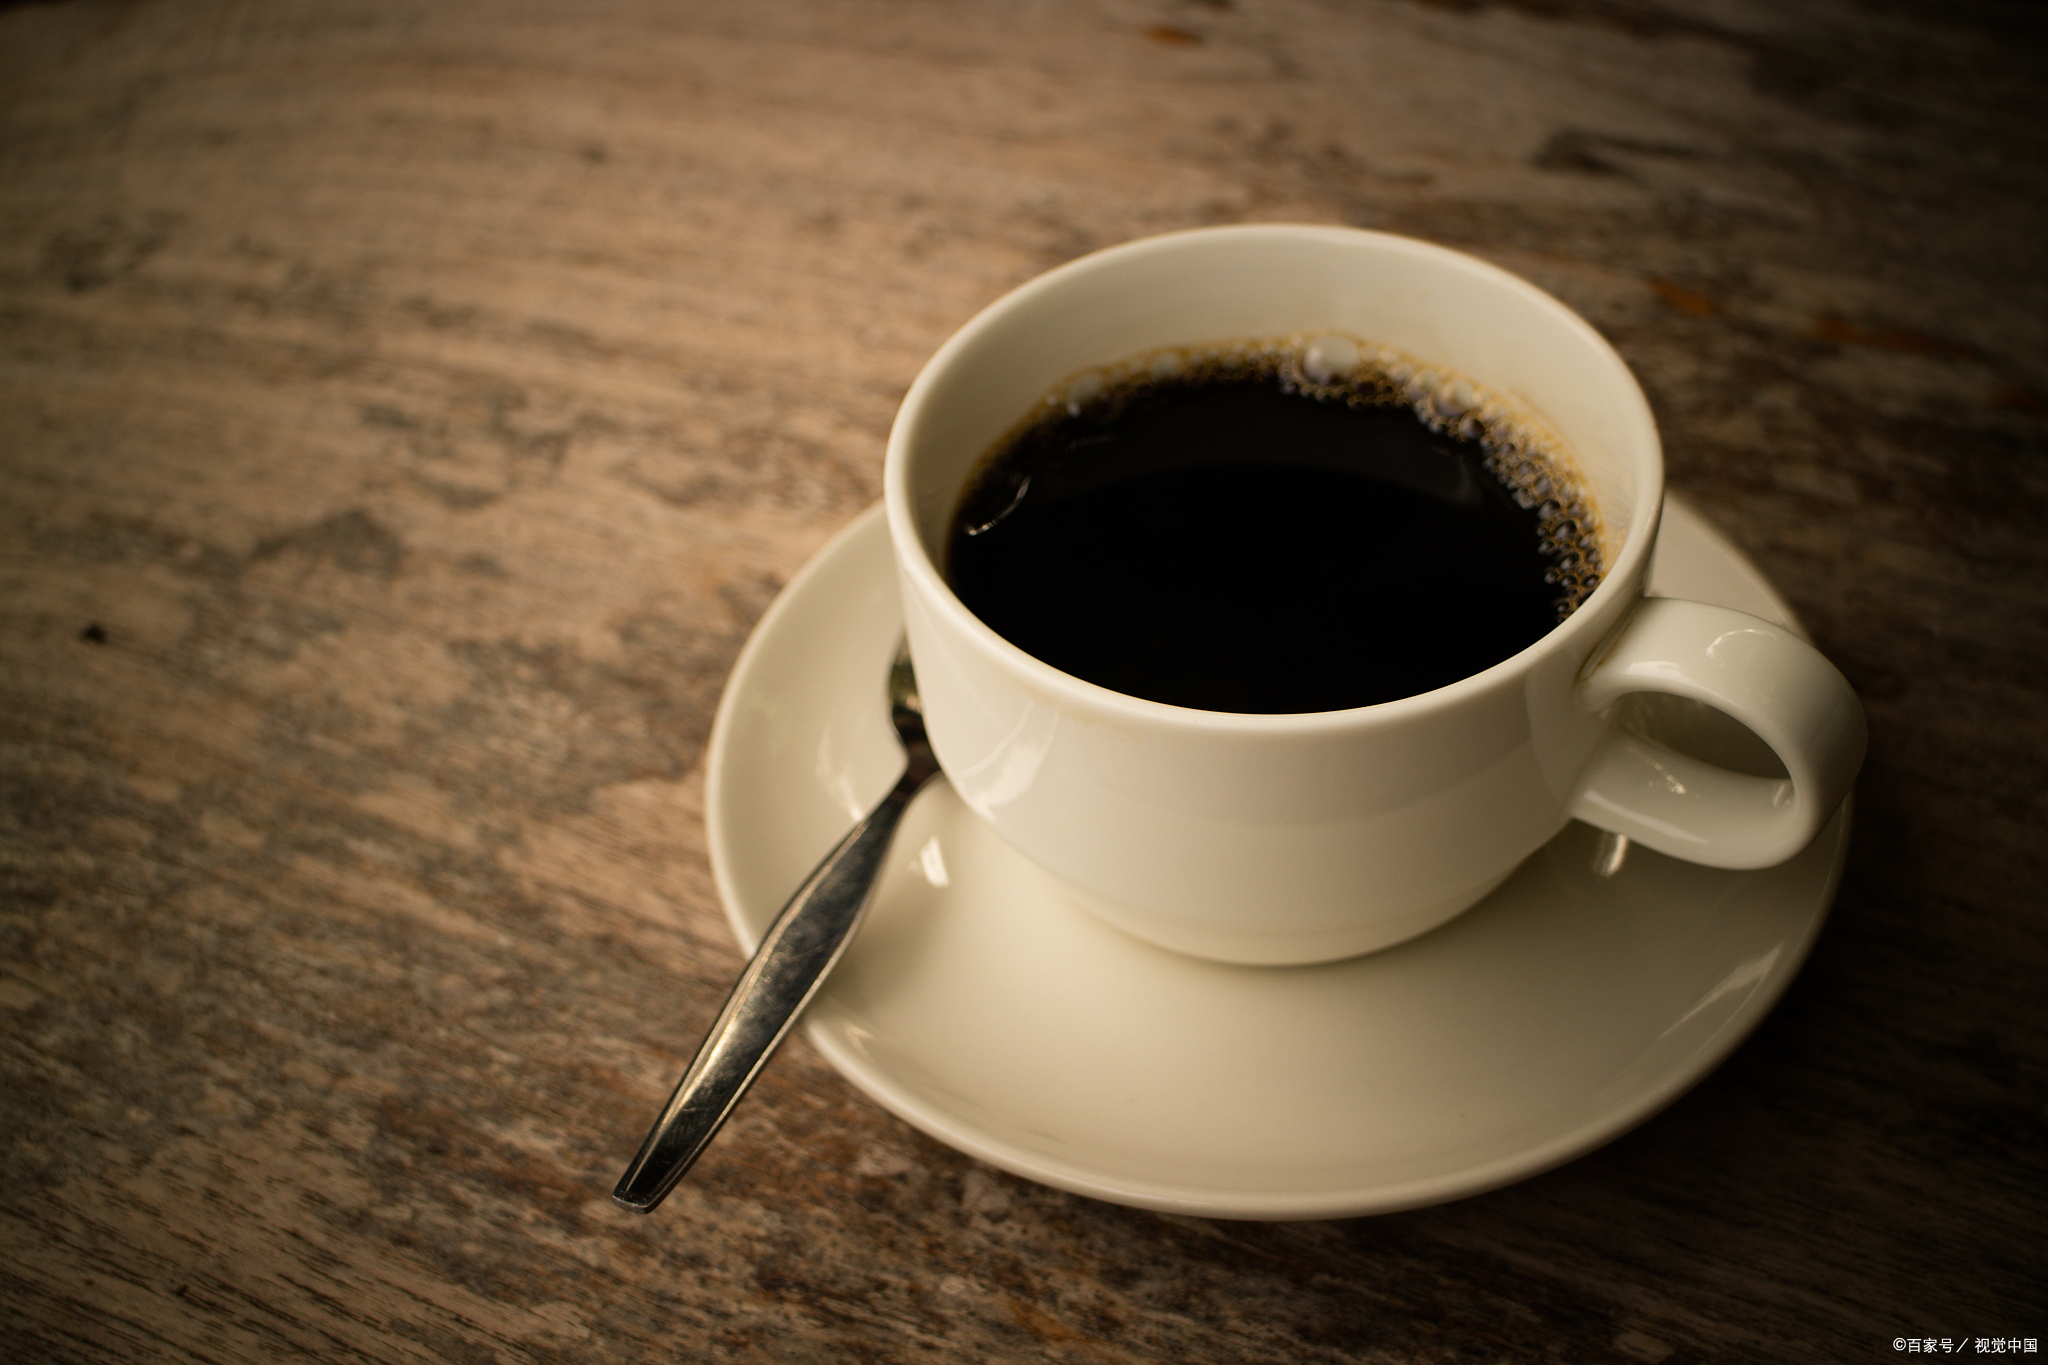 每天坚持喝黑咖啡真的能减肥吗?什么时候喝效果好?